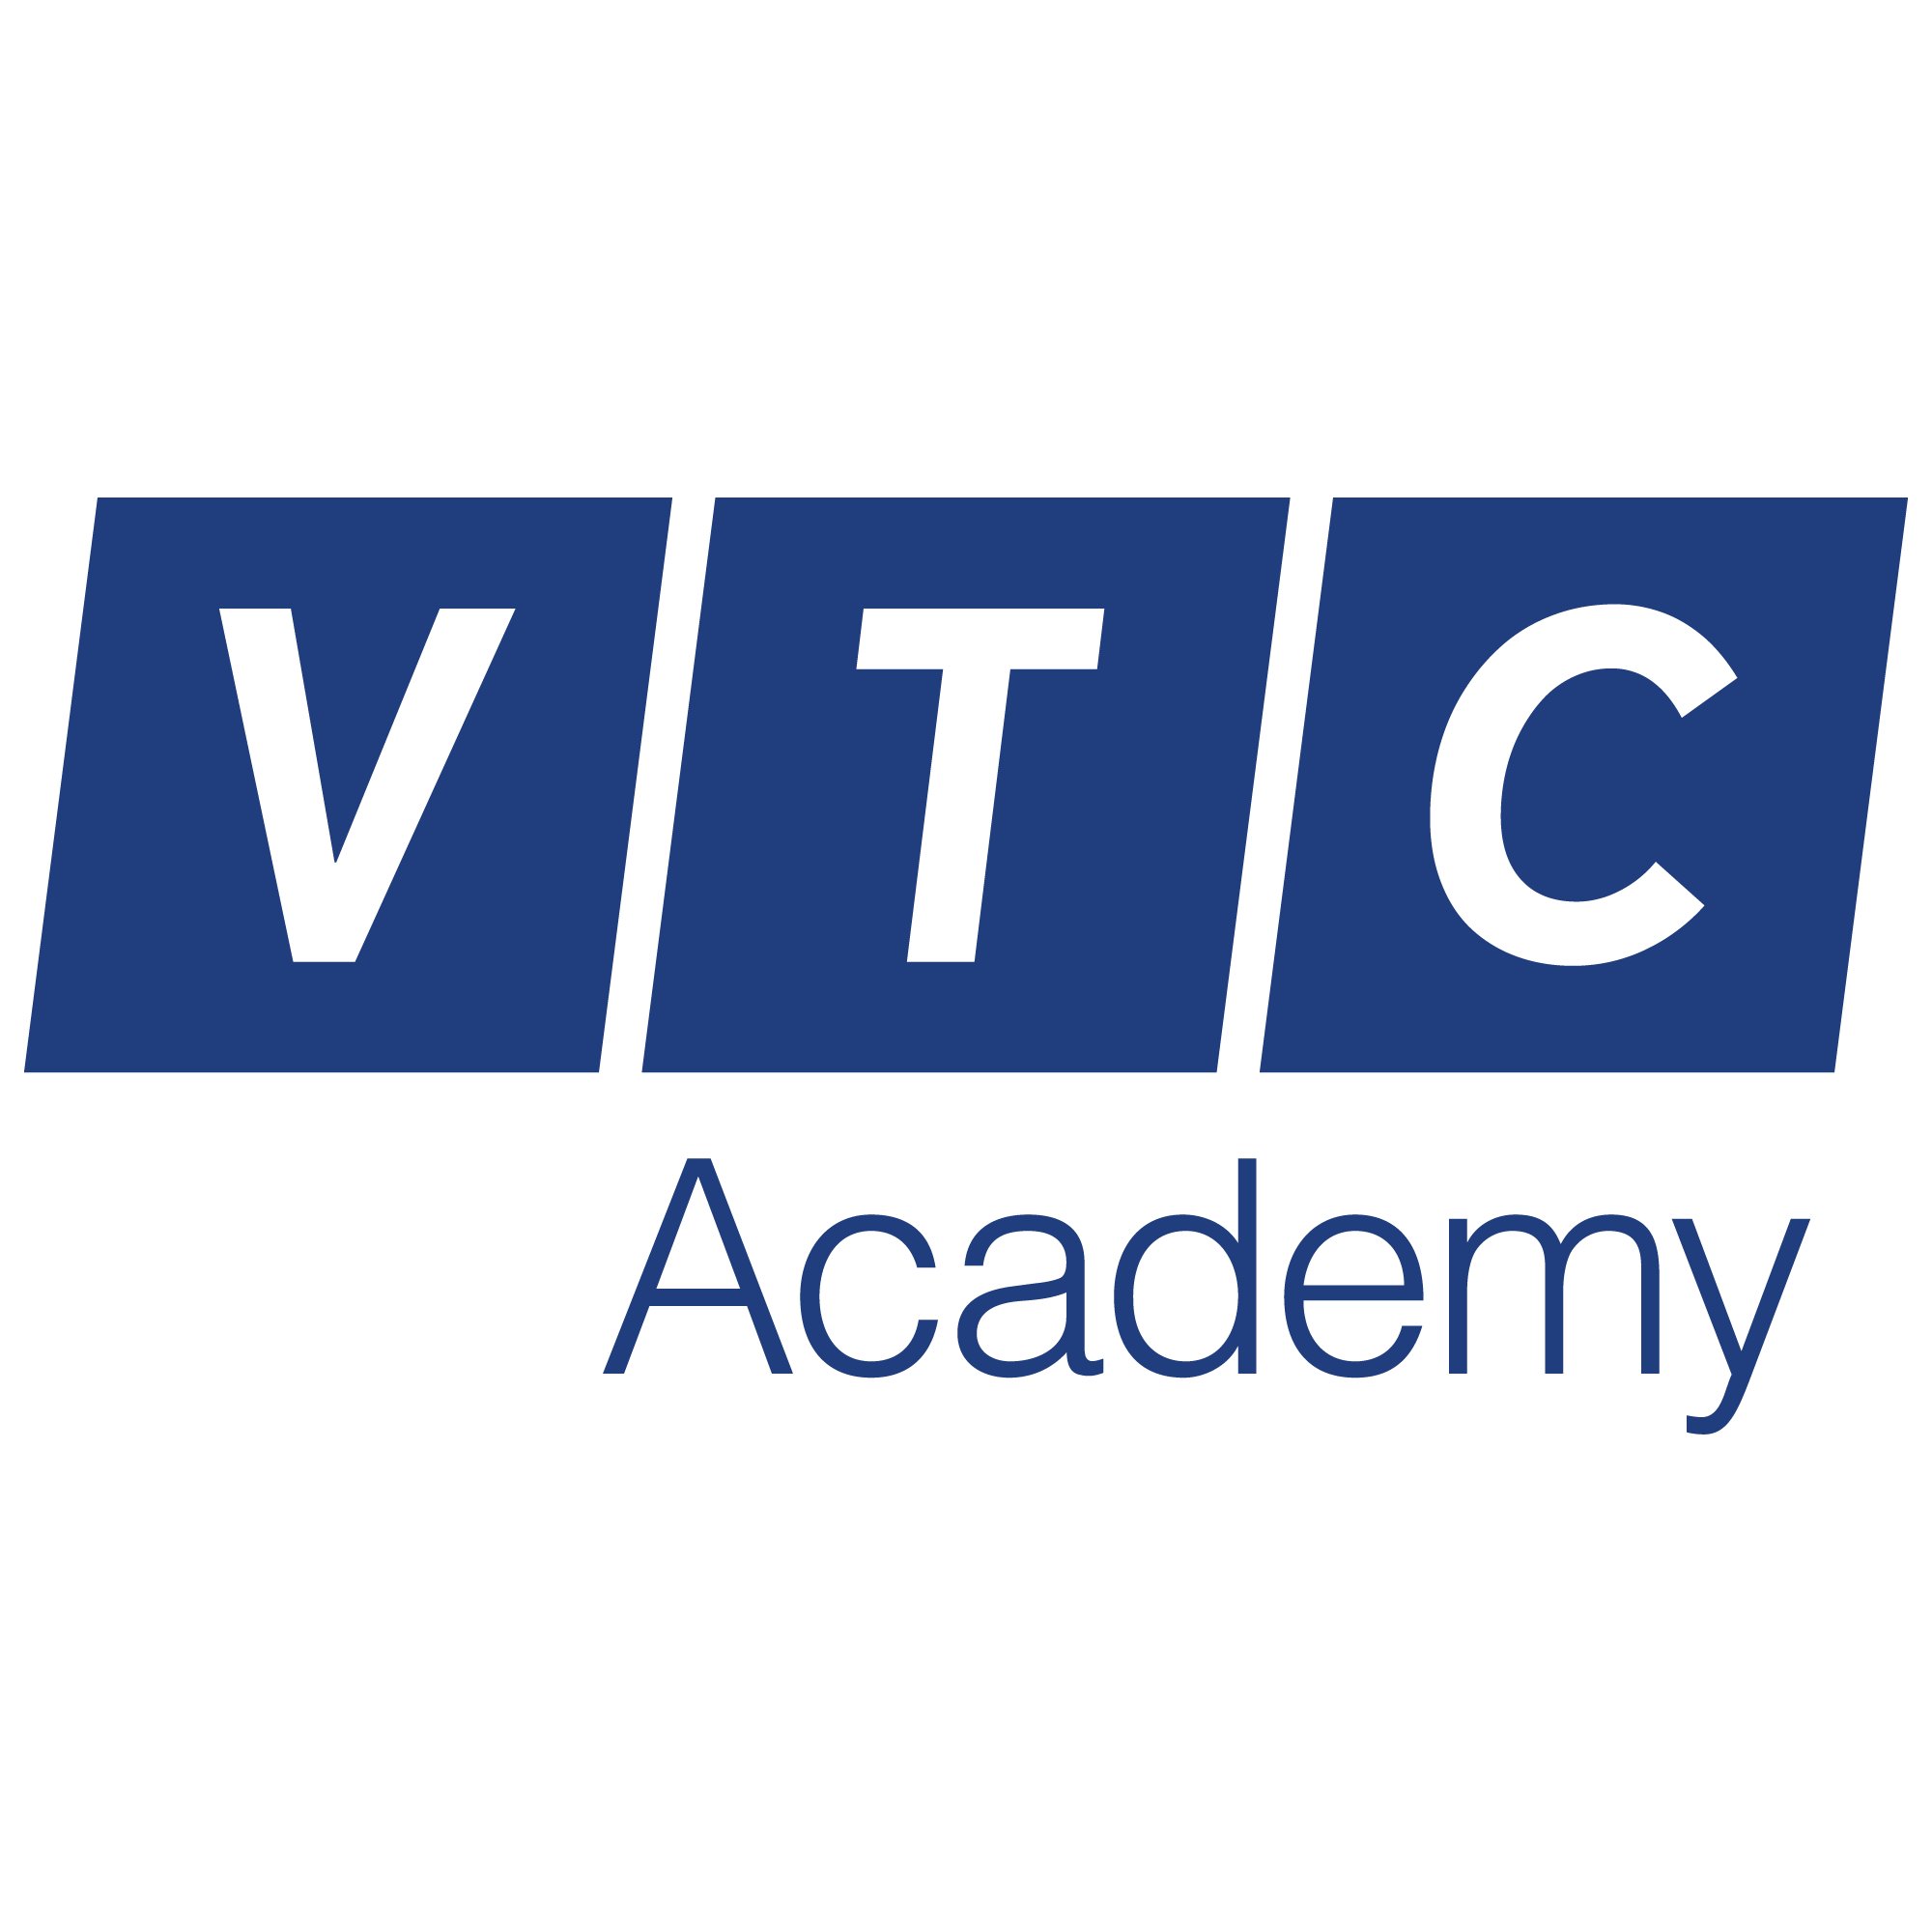 VTCA VTCA